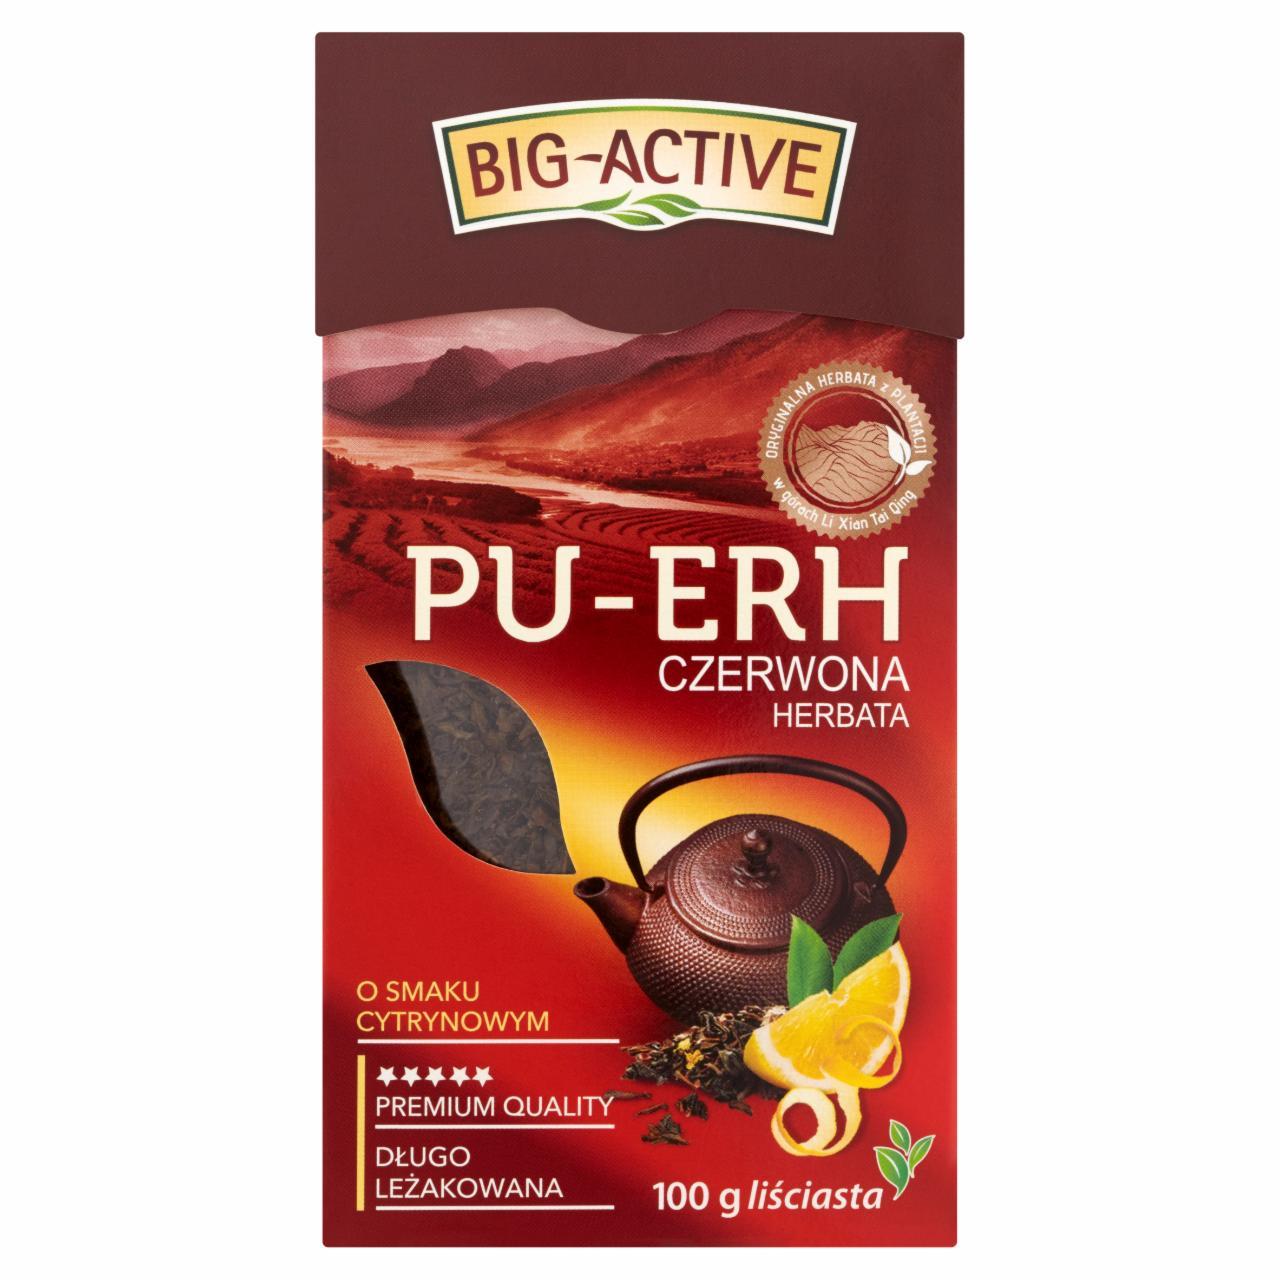 Zdjęcia - Pu-Erh Herbata czerwona o smaku cytrynowym liściasta 100 g Big-Active